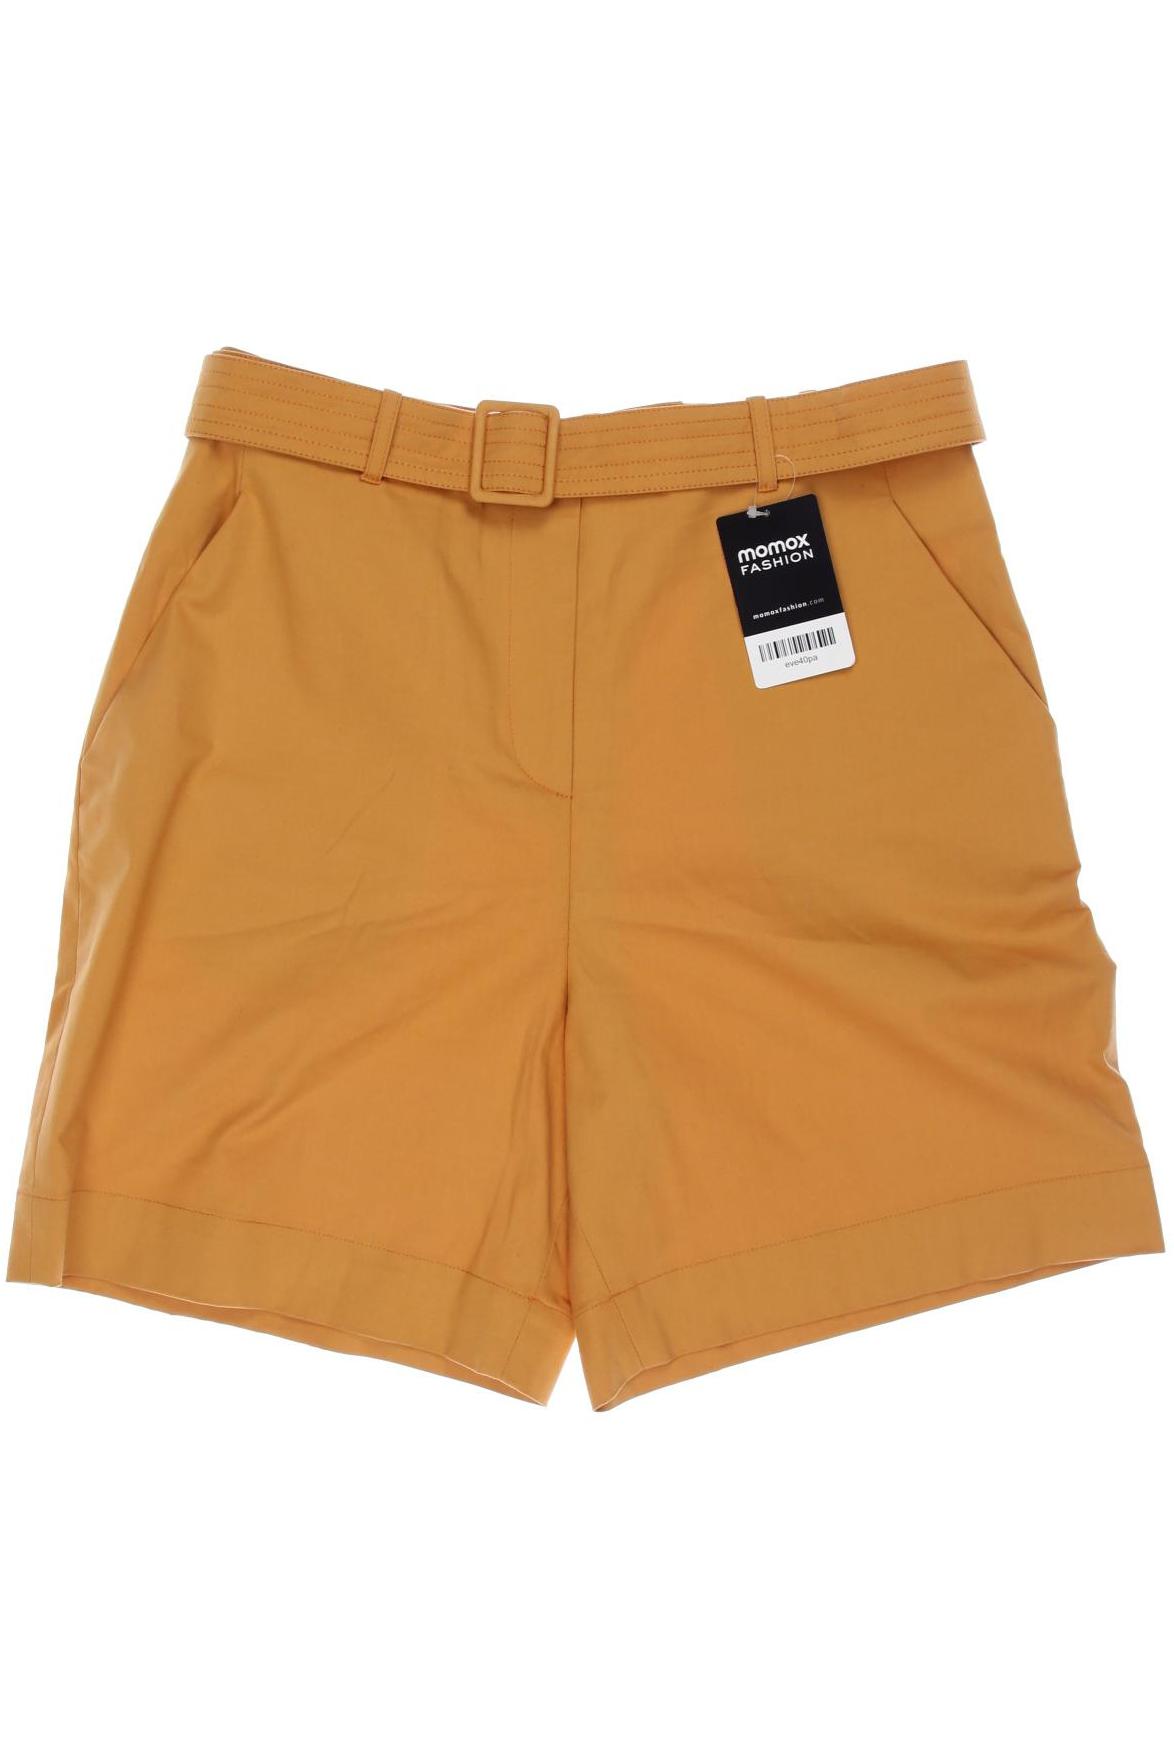 Ivko Damen Shorts, orange, Gr. 40 von IVKO